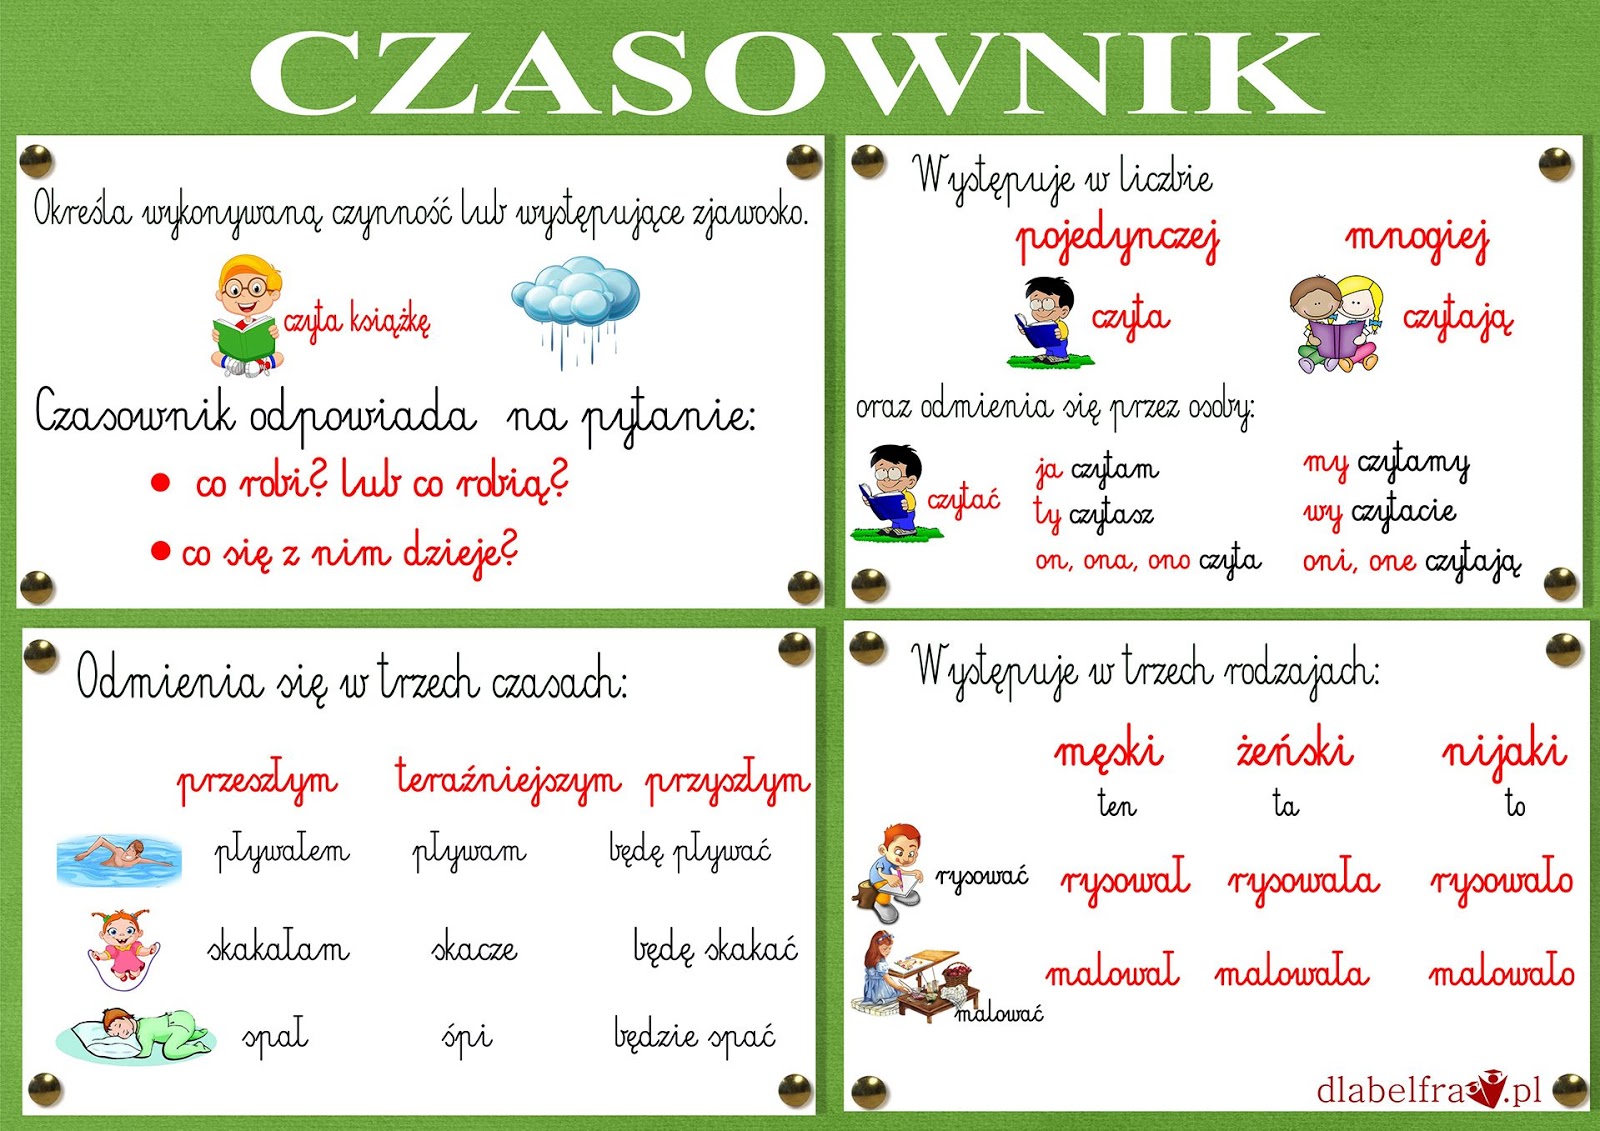 homework co oznacza po polsku